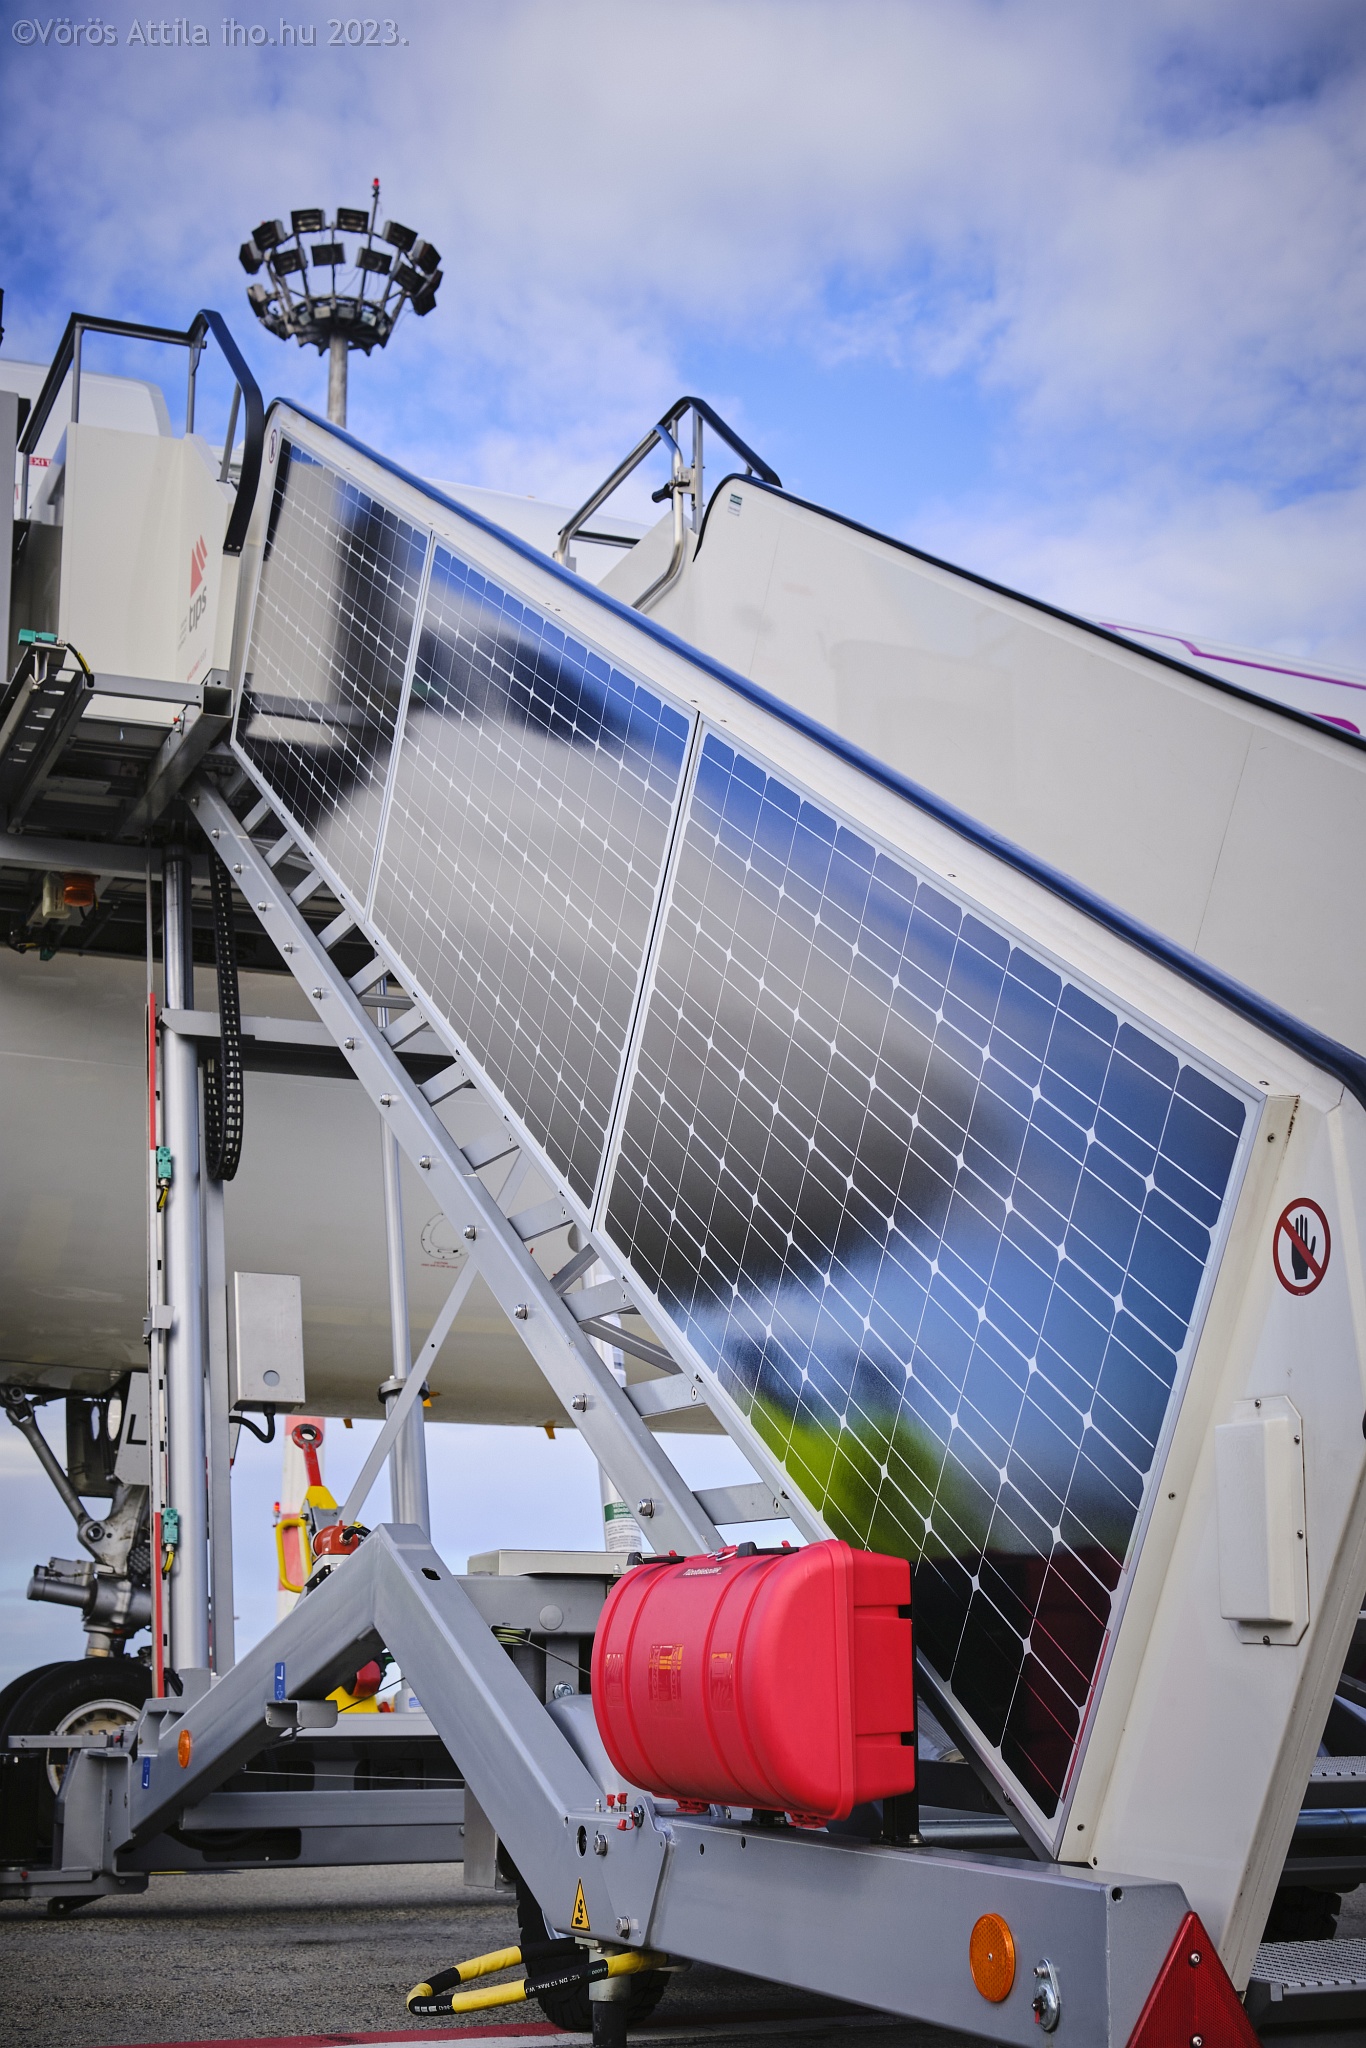 Az utaslépcső felületein napelemek gyűjtik be az energiát. Ez bőven elég a saját üzemeléséhez!